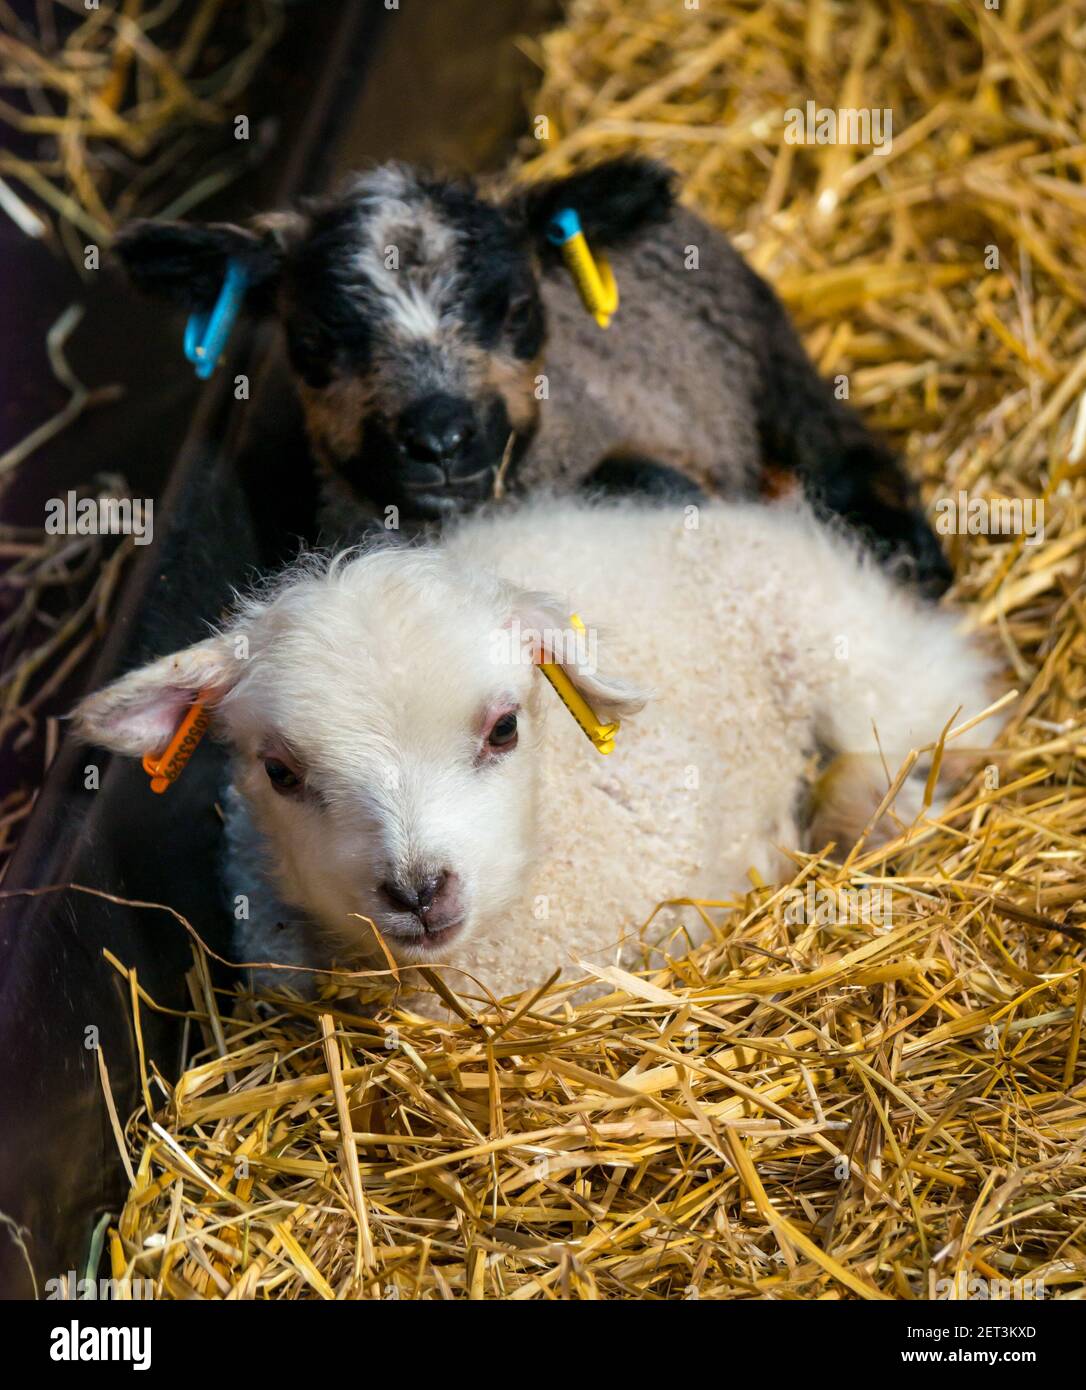 Mignon nouveau-né mouton Shetland jumeaux d'agneau, un un a Katmoget, dans la paille dans la grange, Écosse, Royaume-Uni Banque D'Images